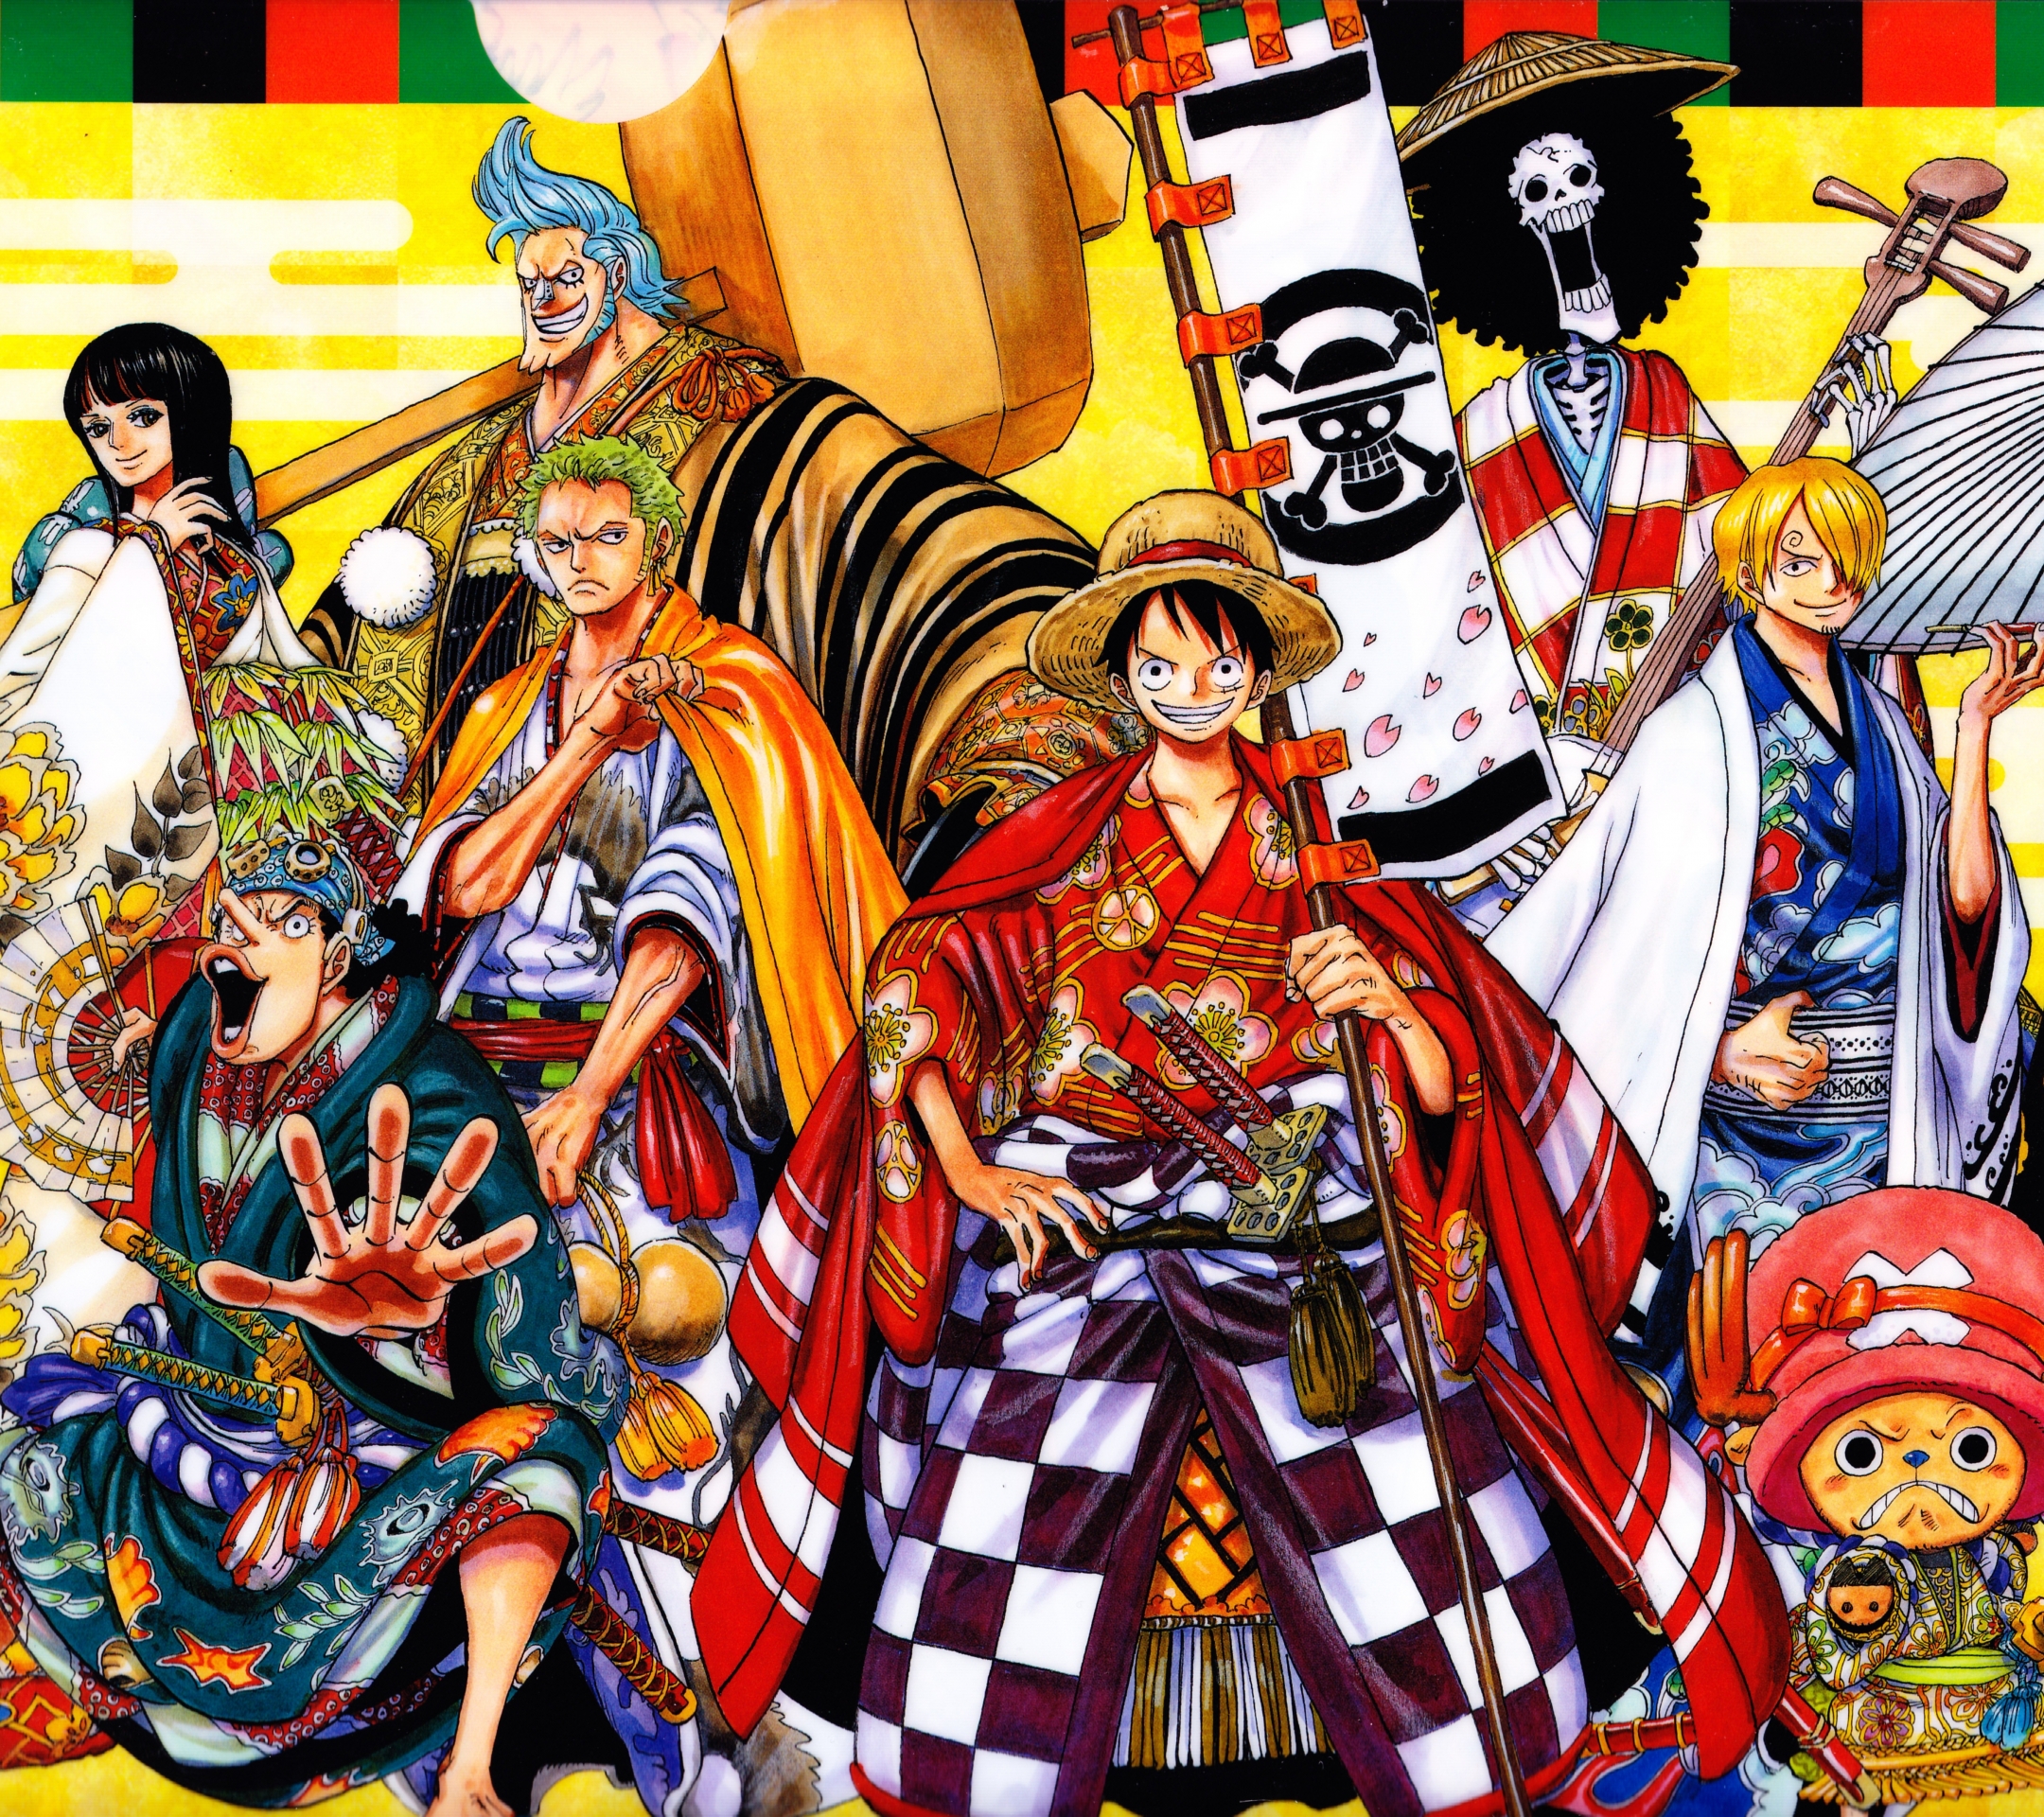 Descarga gratuita de fondo de pantalla para móvil de Animado, One Piece, Tony Tony Chopper, Usopp (Una Pieza), Roronoa Zoro, Monkey D Luffy, Nami (Una Pieza), Sanji (Una Pieza), Nico Robin, Franky (Una Pieza), Ropa Japonesa.